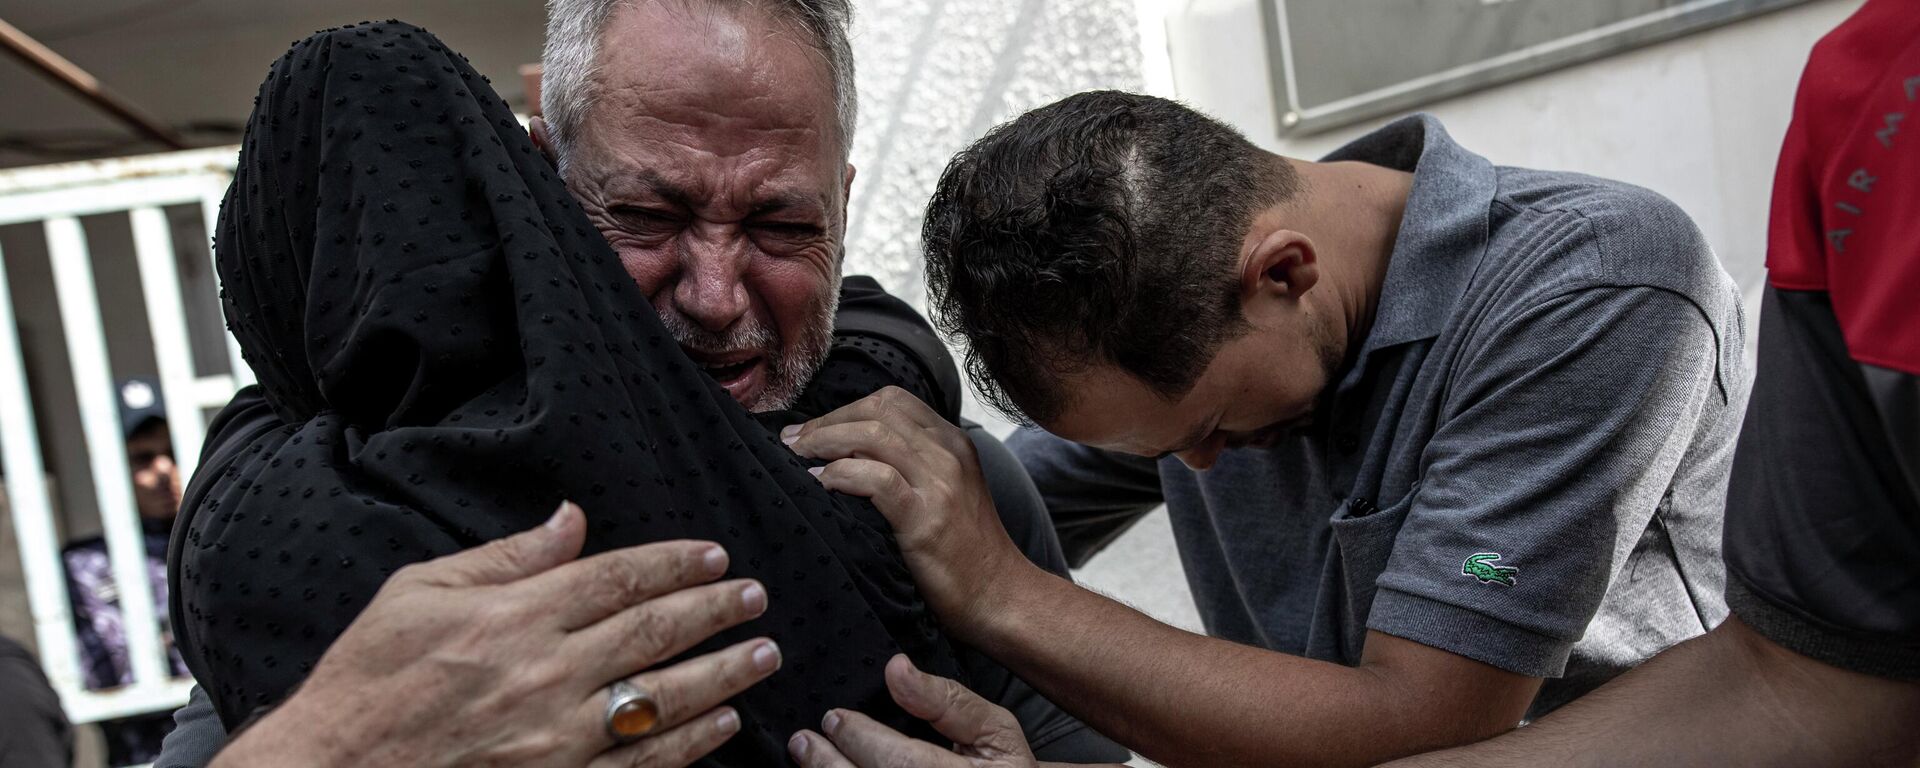 La gente está llorando en Gaza tras los ataques israelíes - Sputnik Mundo, 1920, 07.08.2022